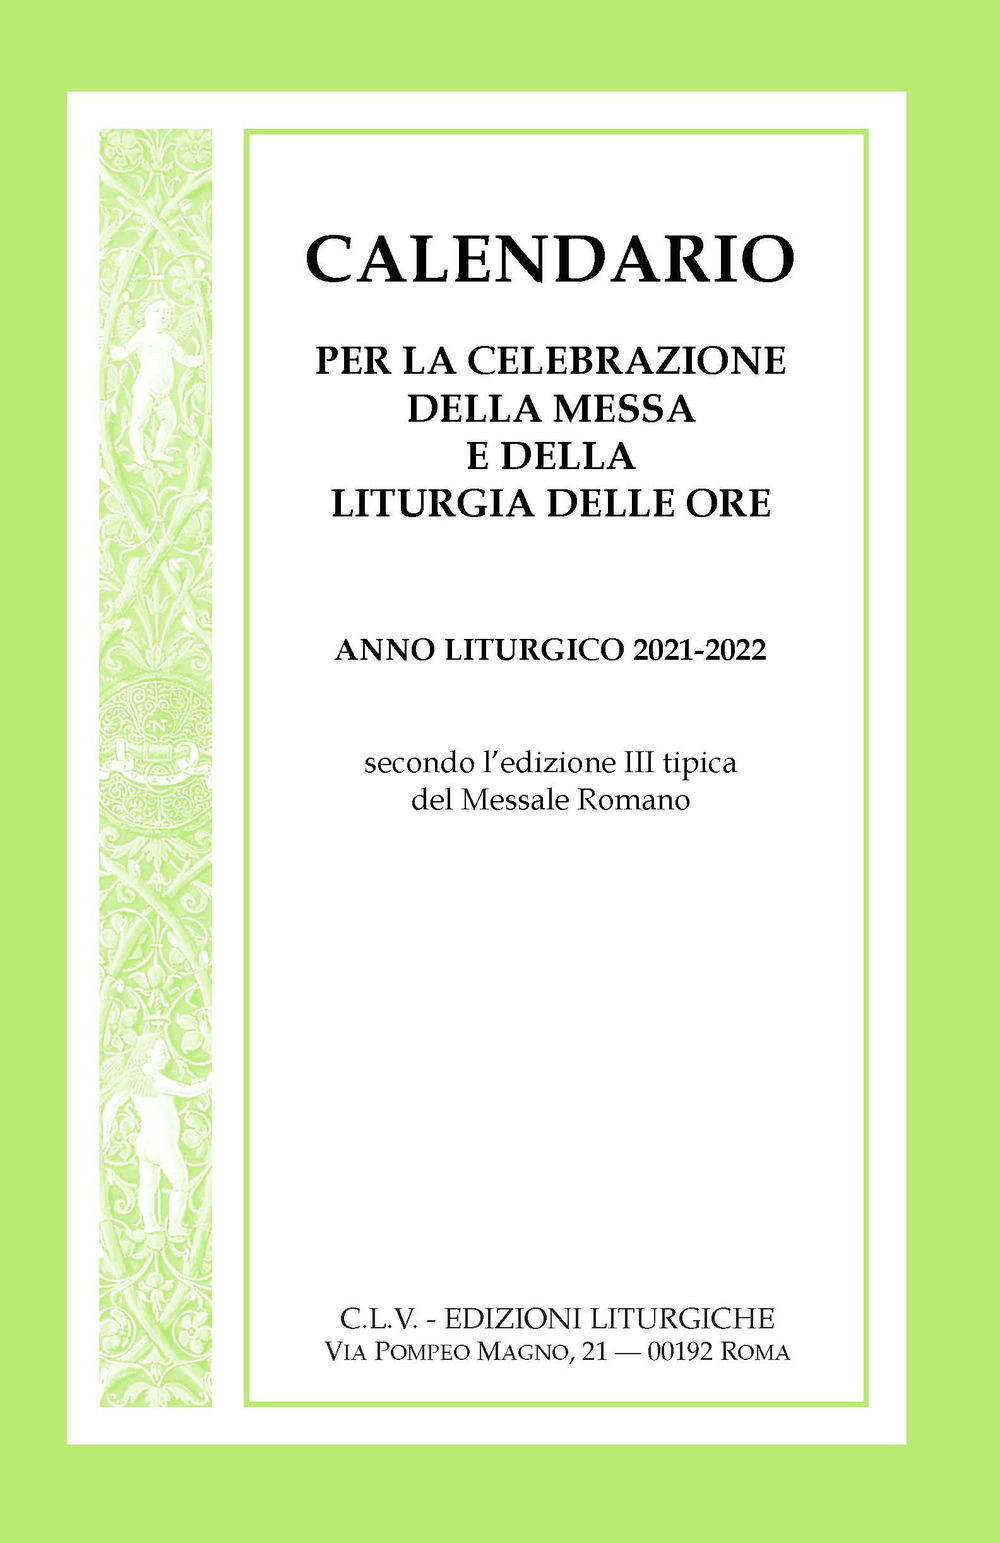 Calendario per la celebrazione della Messa e della Liturgia delle Ore. Anno liturgico 2021-2022, secondo l'edizione III tipica del Messale Romano